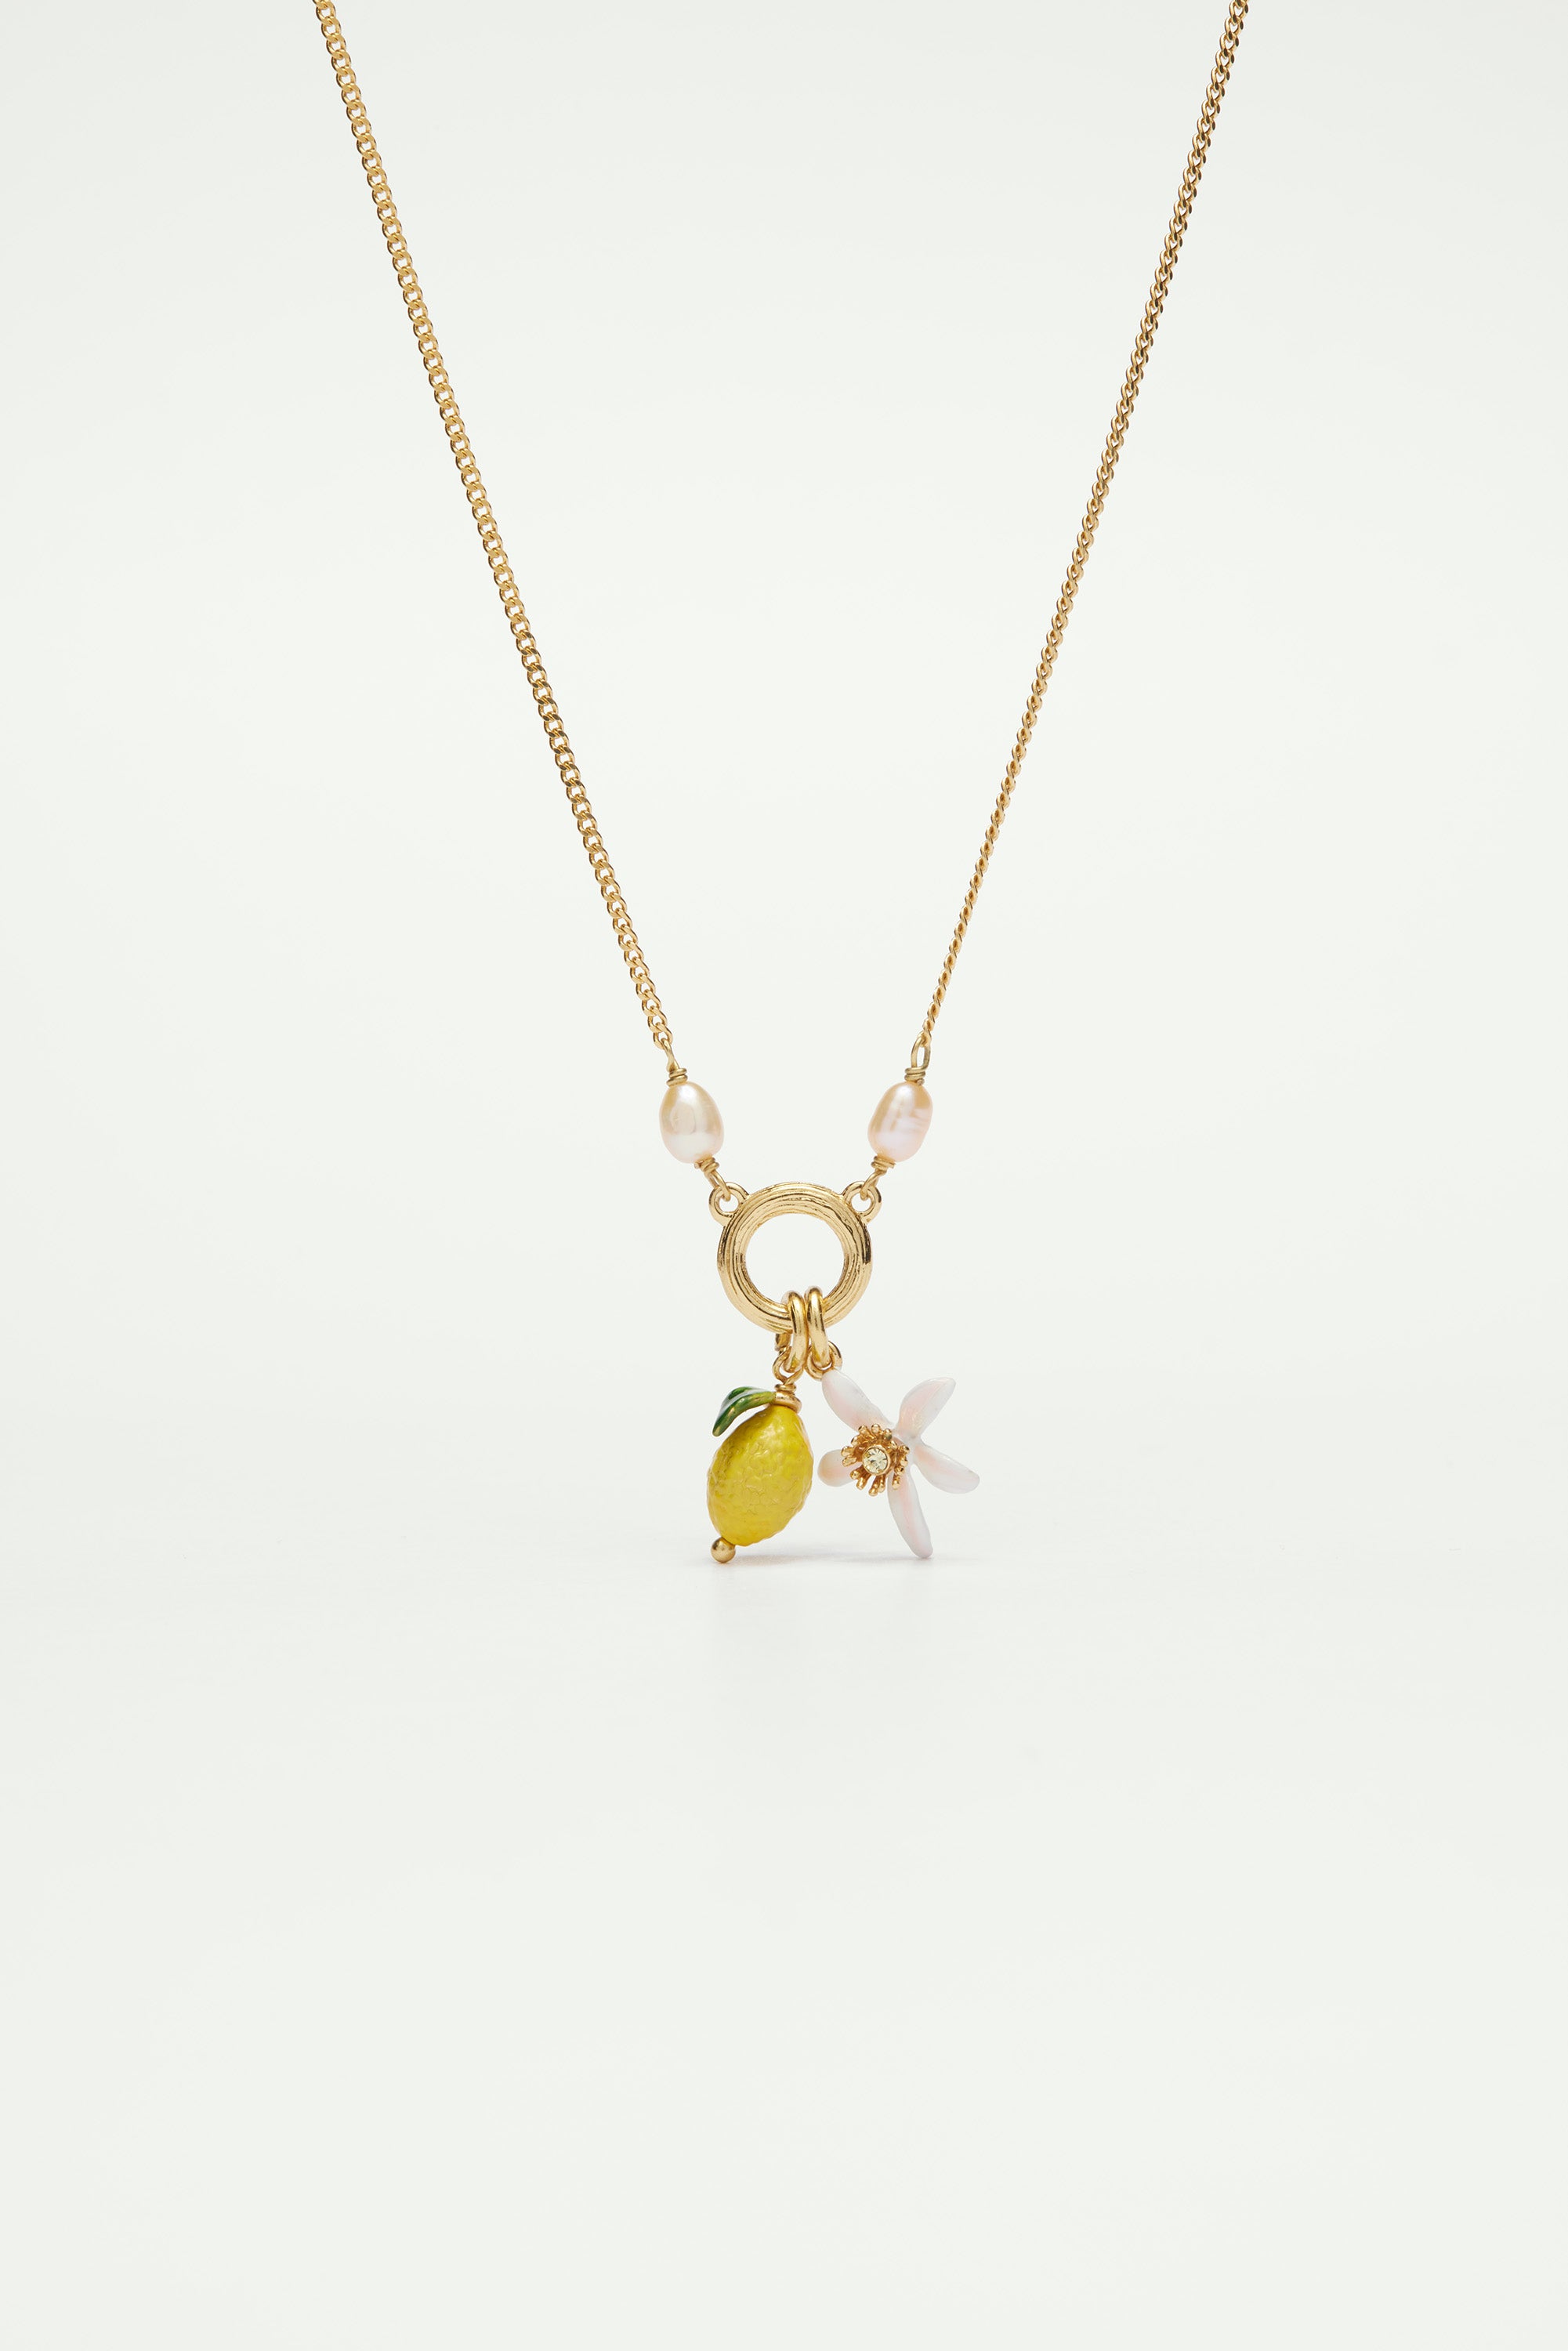 Lemon and lemon blossom pendant necklace